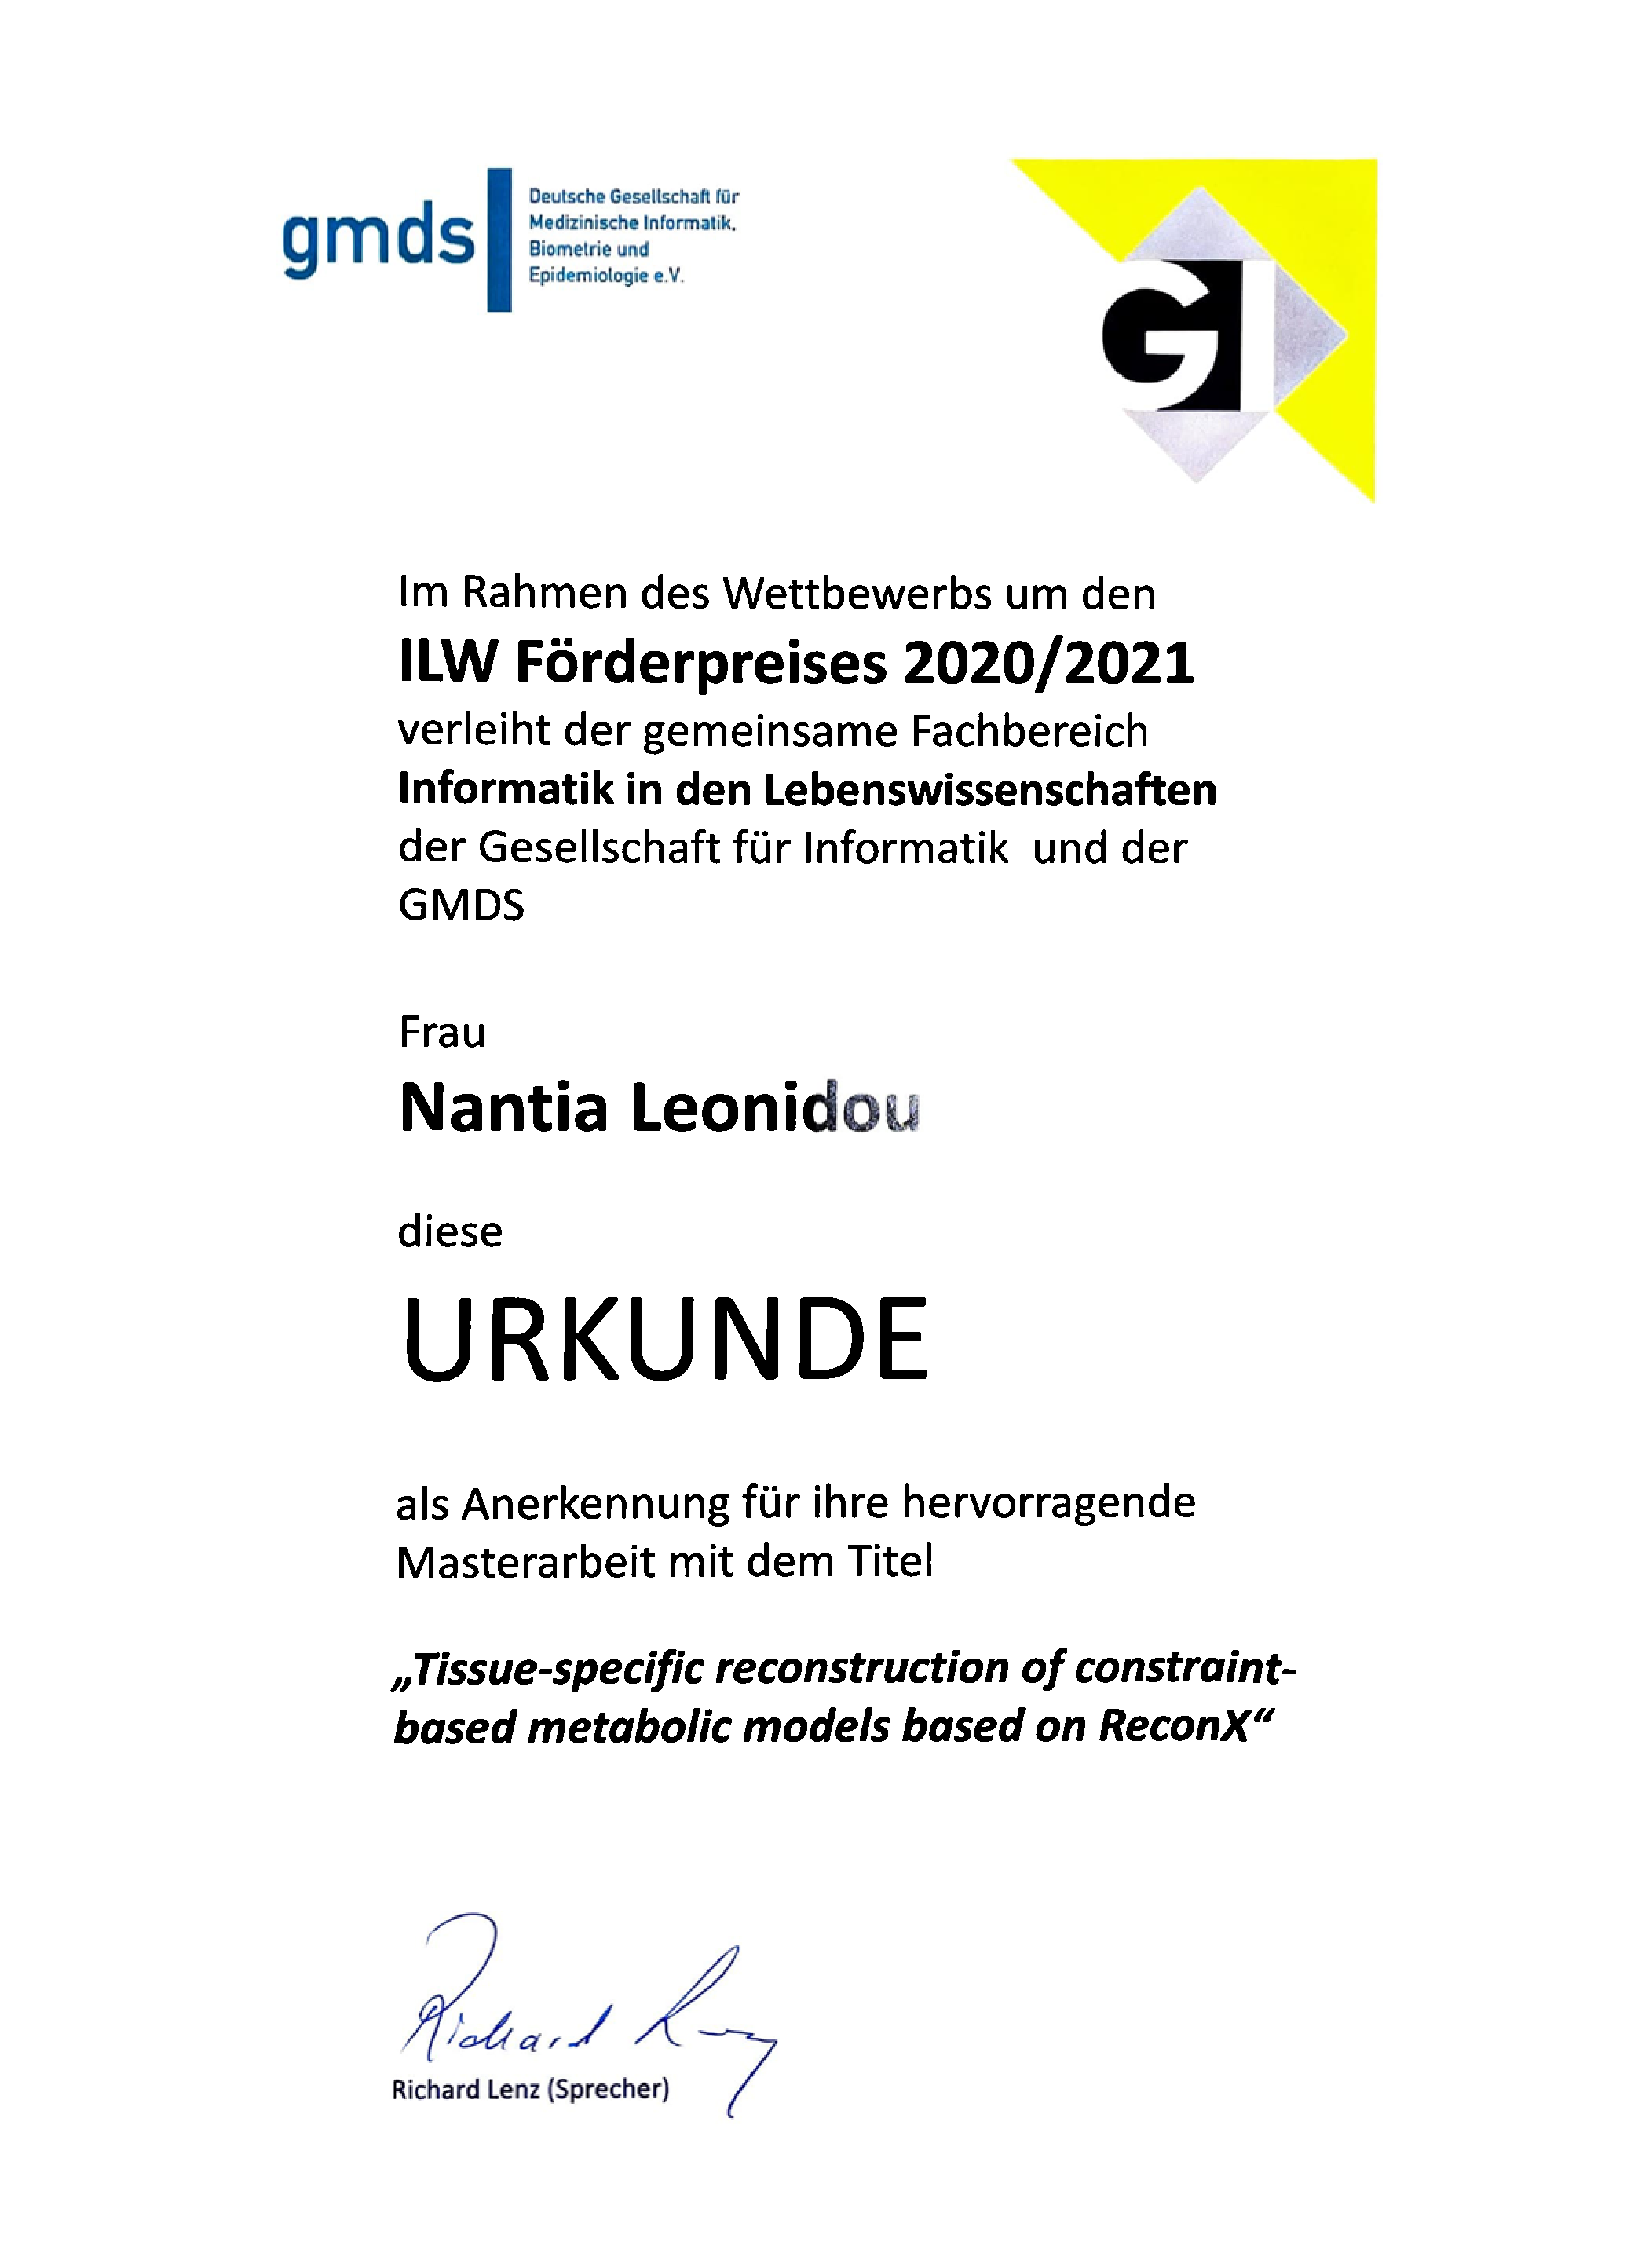 Die Auszeichung 2020/21 für die hervorragende Masterarbeit geht an Nantia Leonidou.